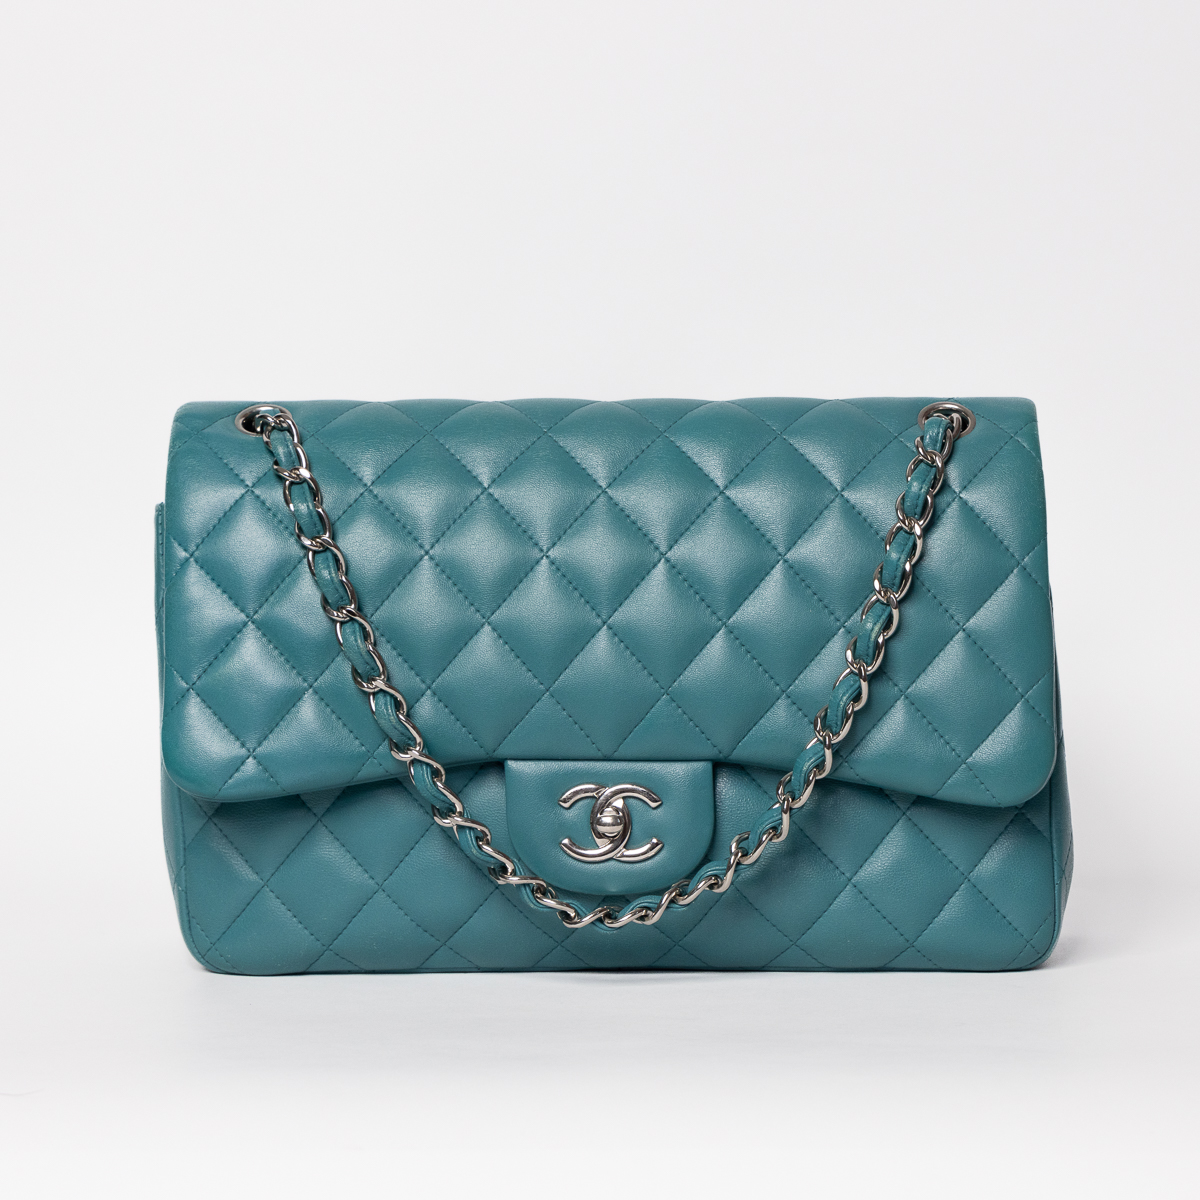 Chanel Timeless Double Flap Jumbo Lambskin turquoise avec du matériel d'argent